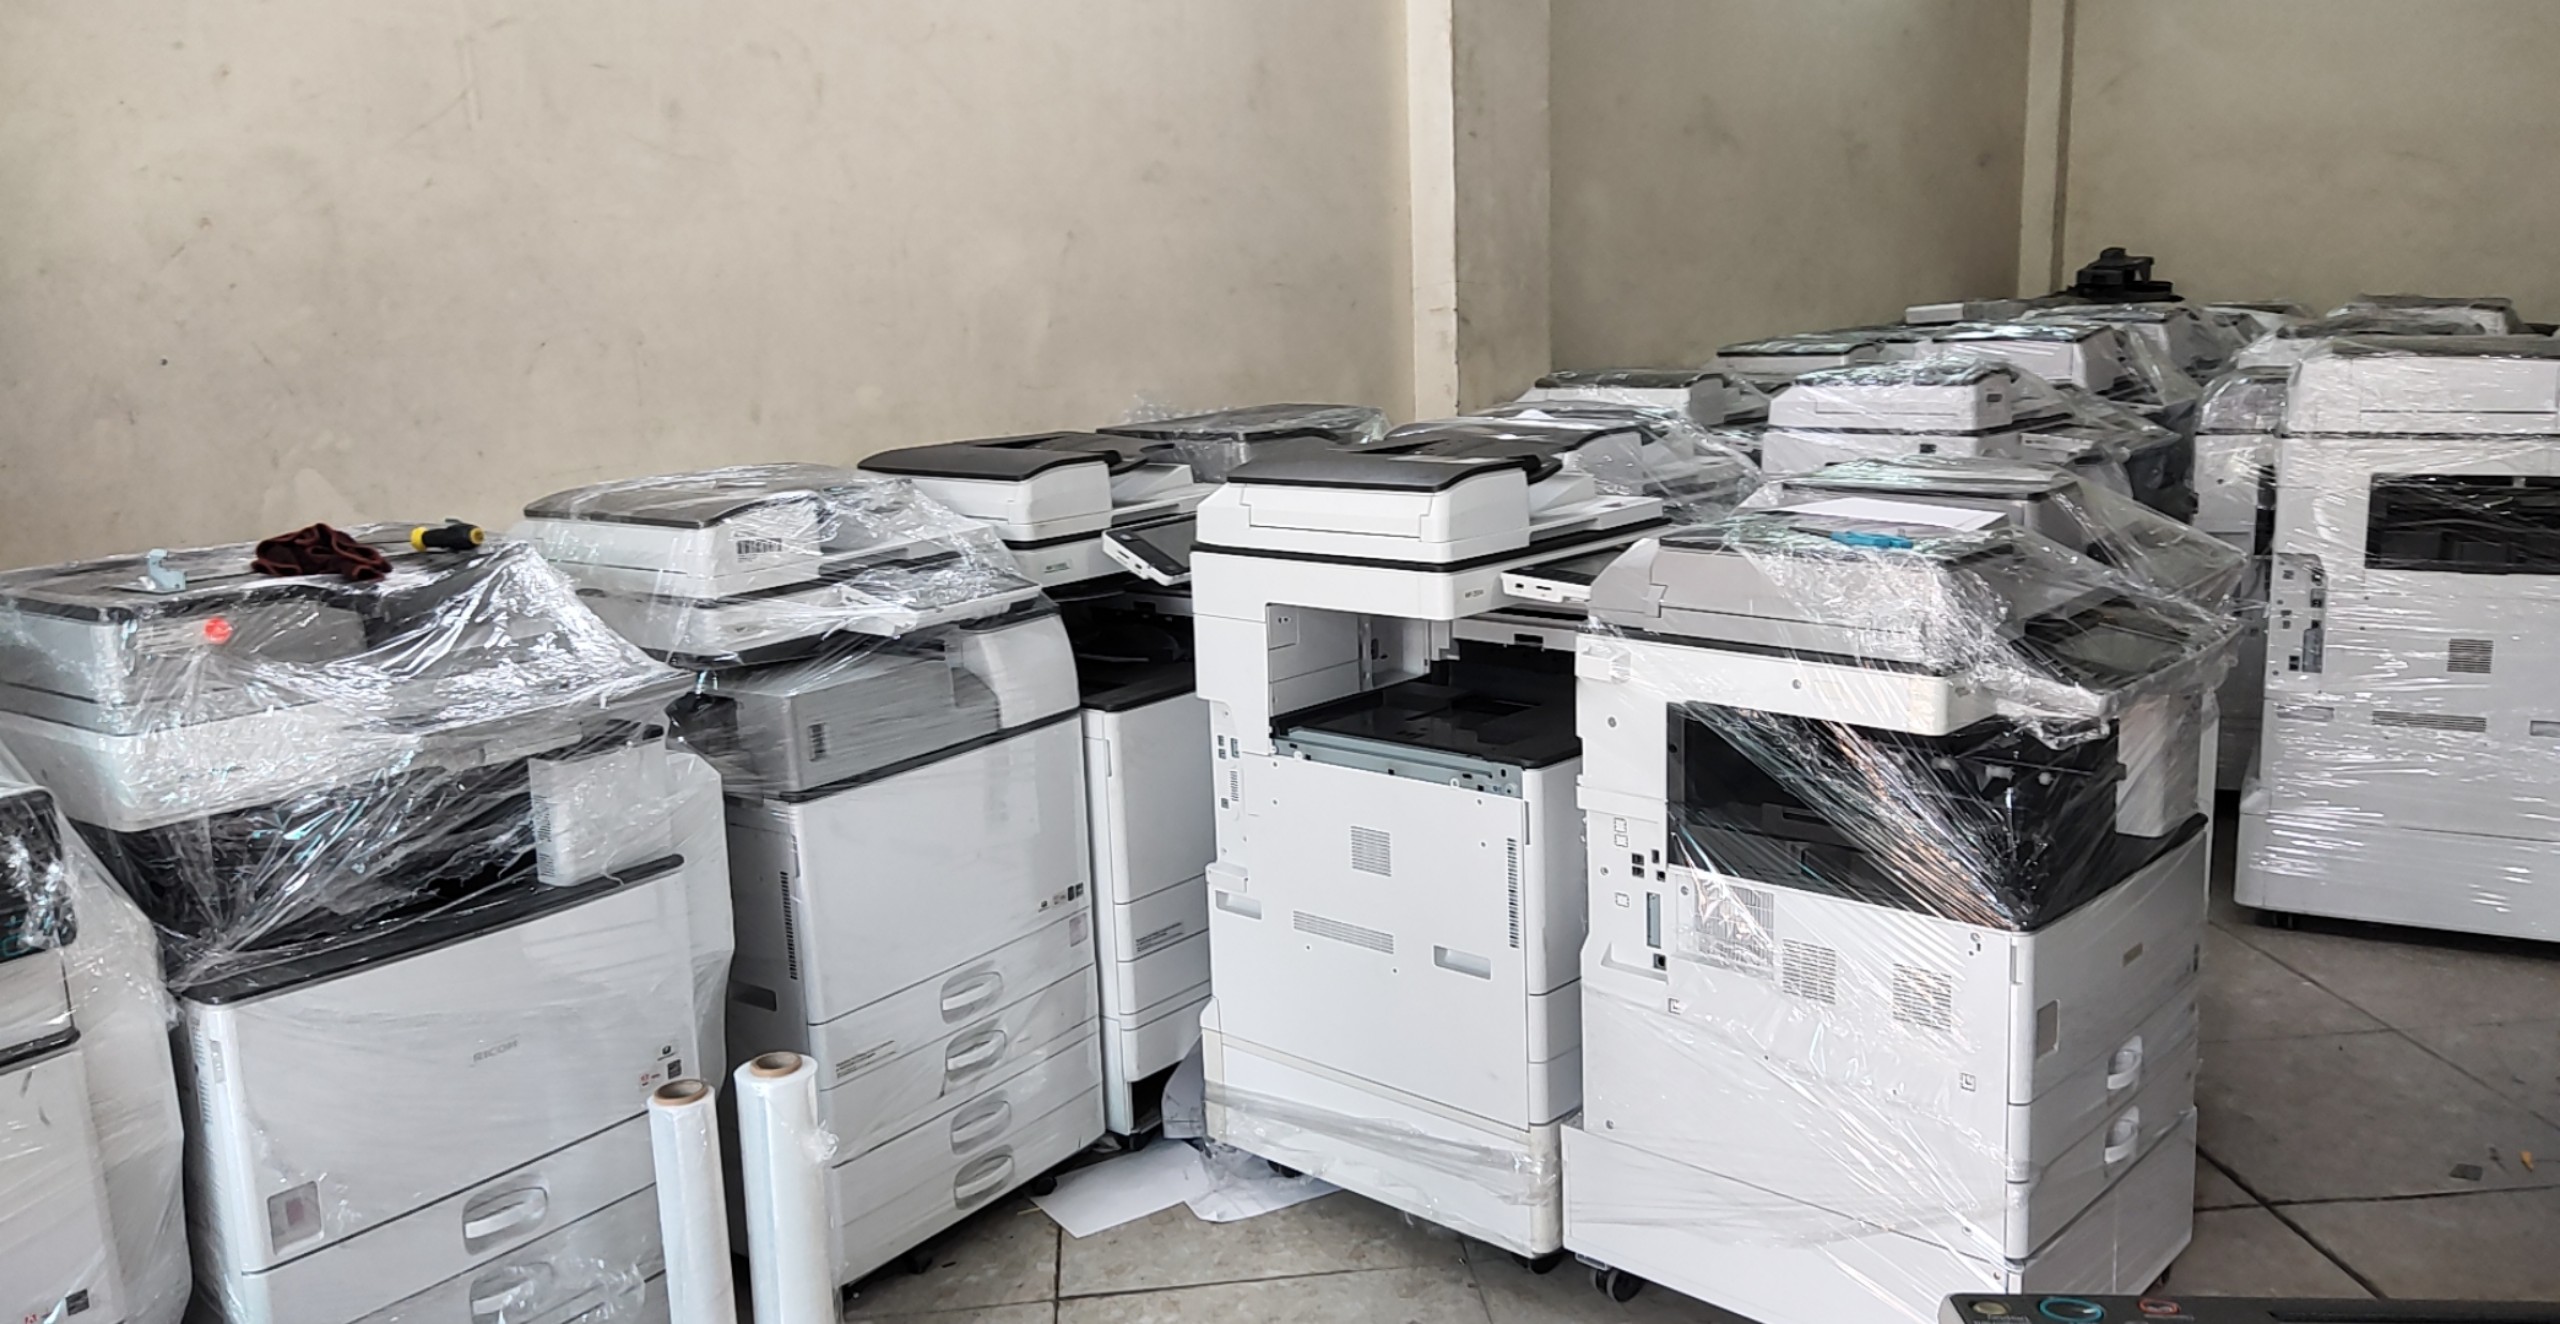 Cho thuê máy photocopy tại Vĩnh Phúc